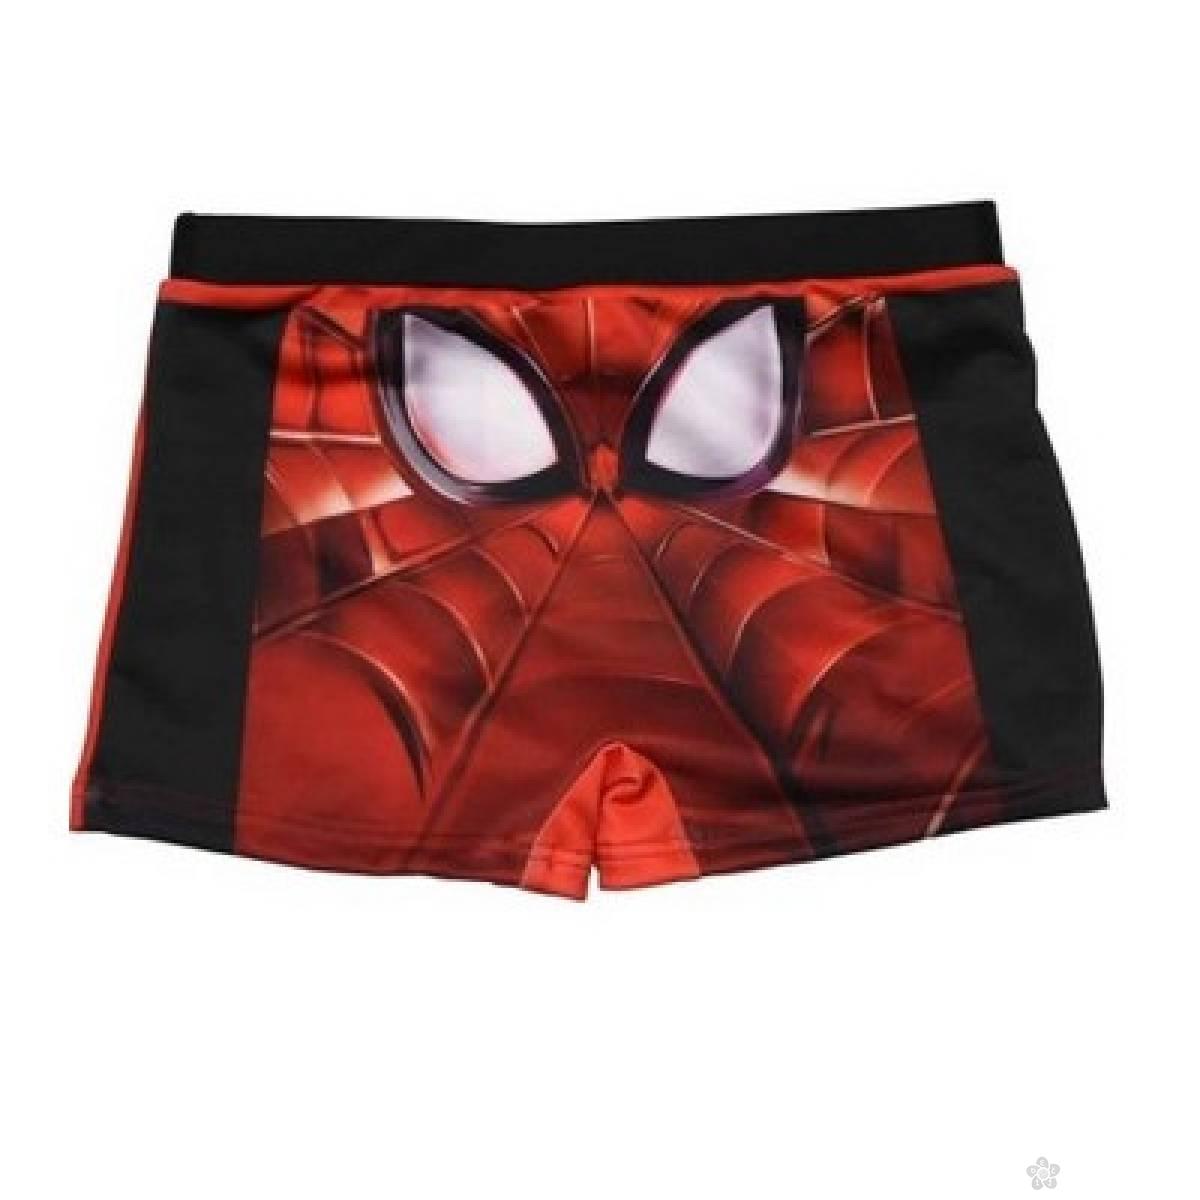 Kupaci za decake bokserice Spiderman, S91019 